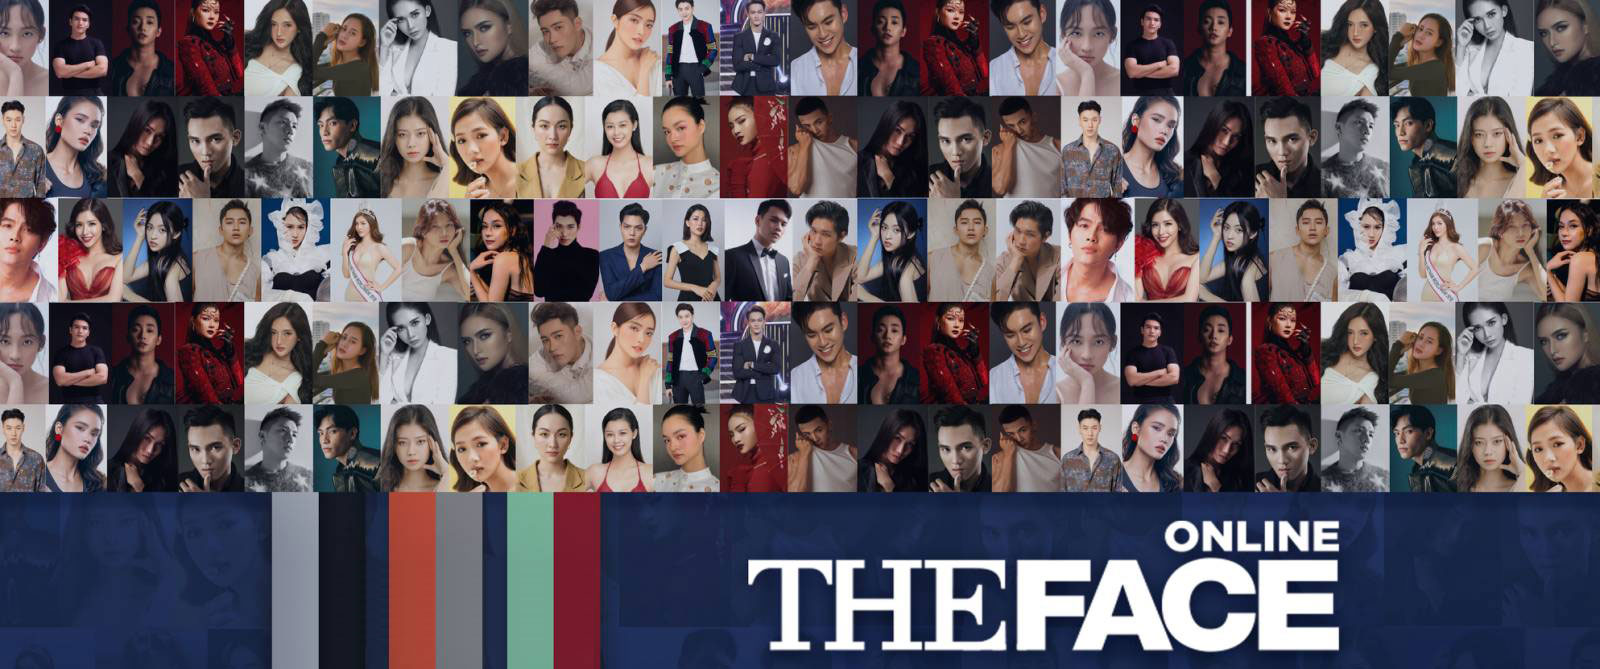 Cuộc thi The Face Vietnam 2020 khởi động với màn Voting online